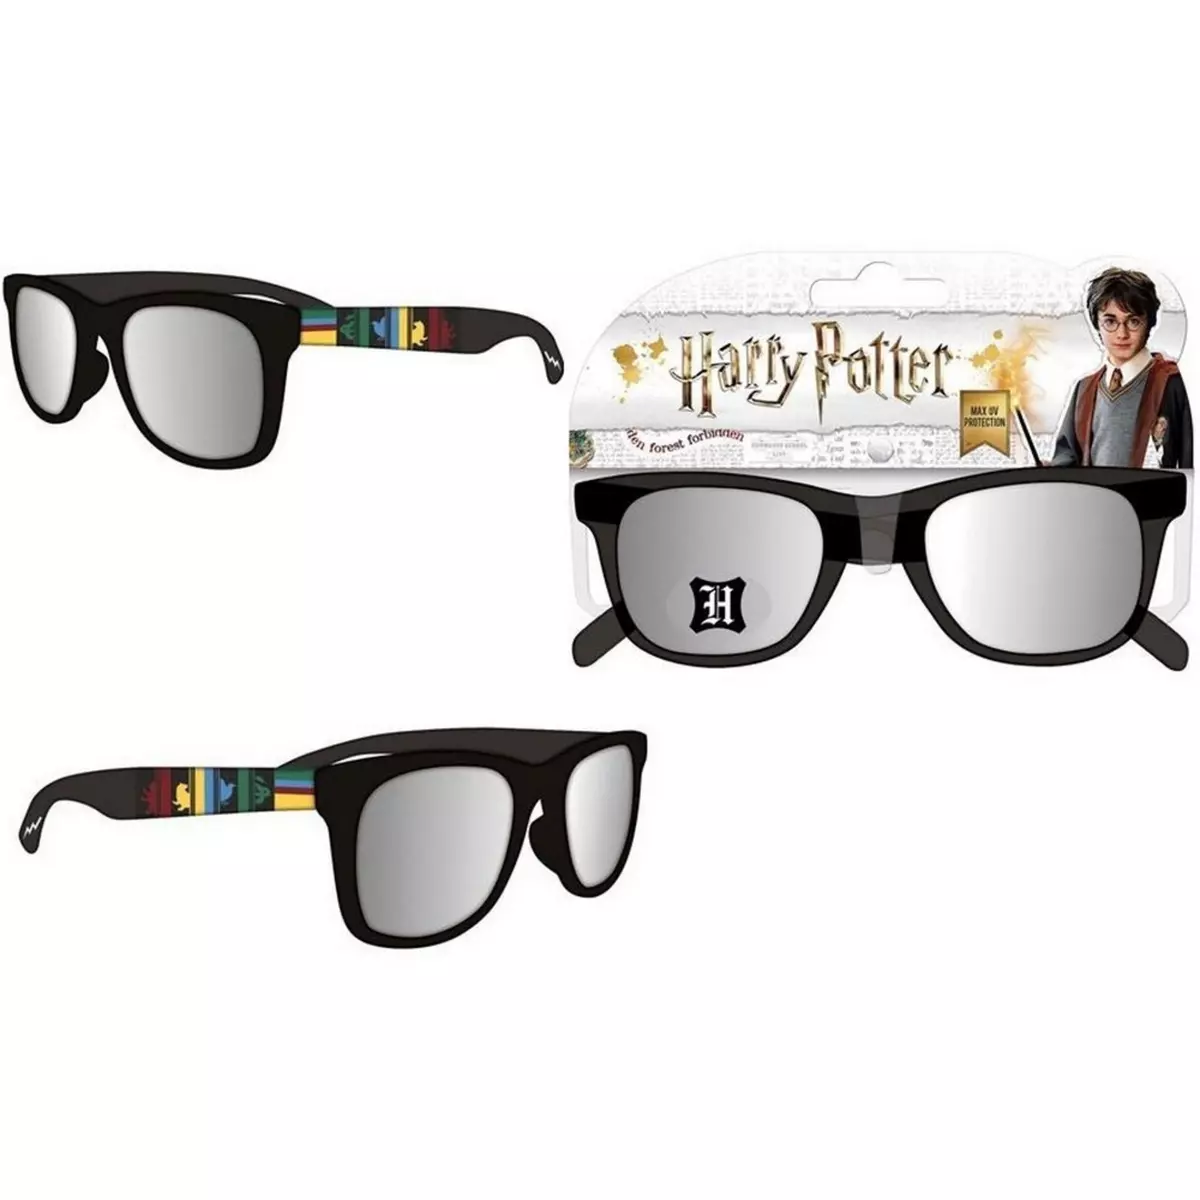 Warner Bros Lunette de soleil Harry Potter enfant ete 1 paire